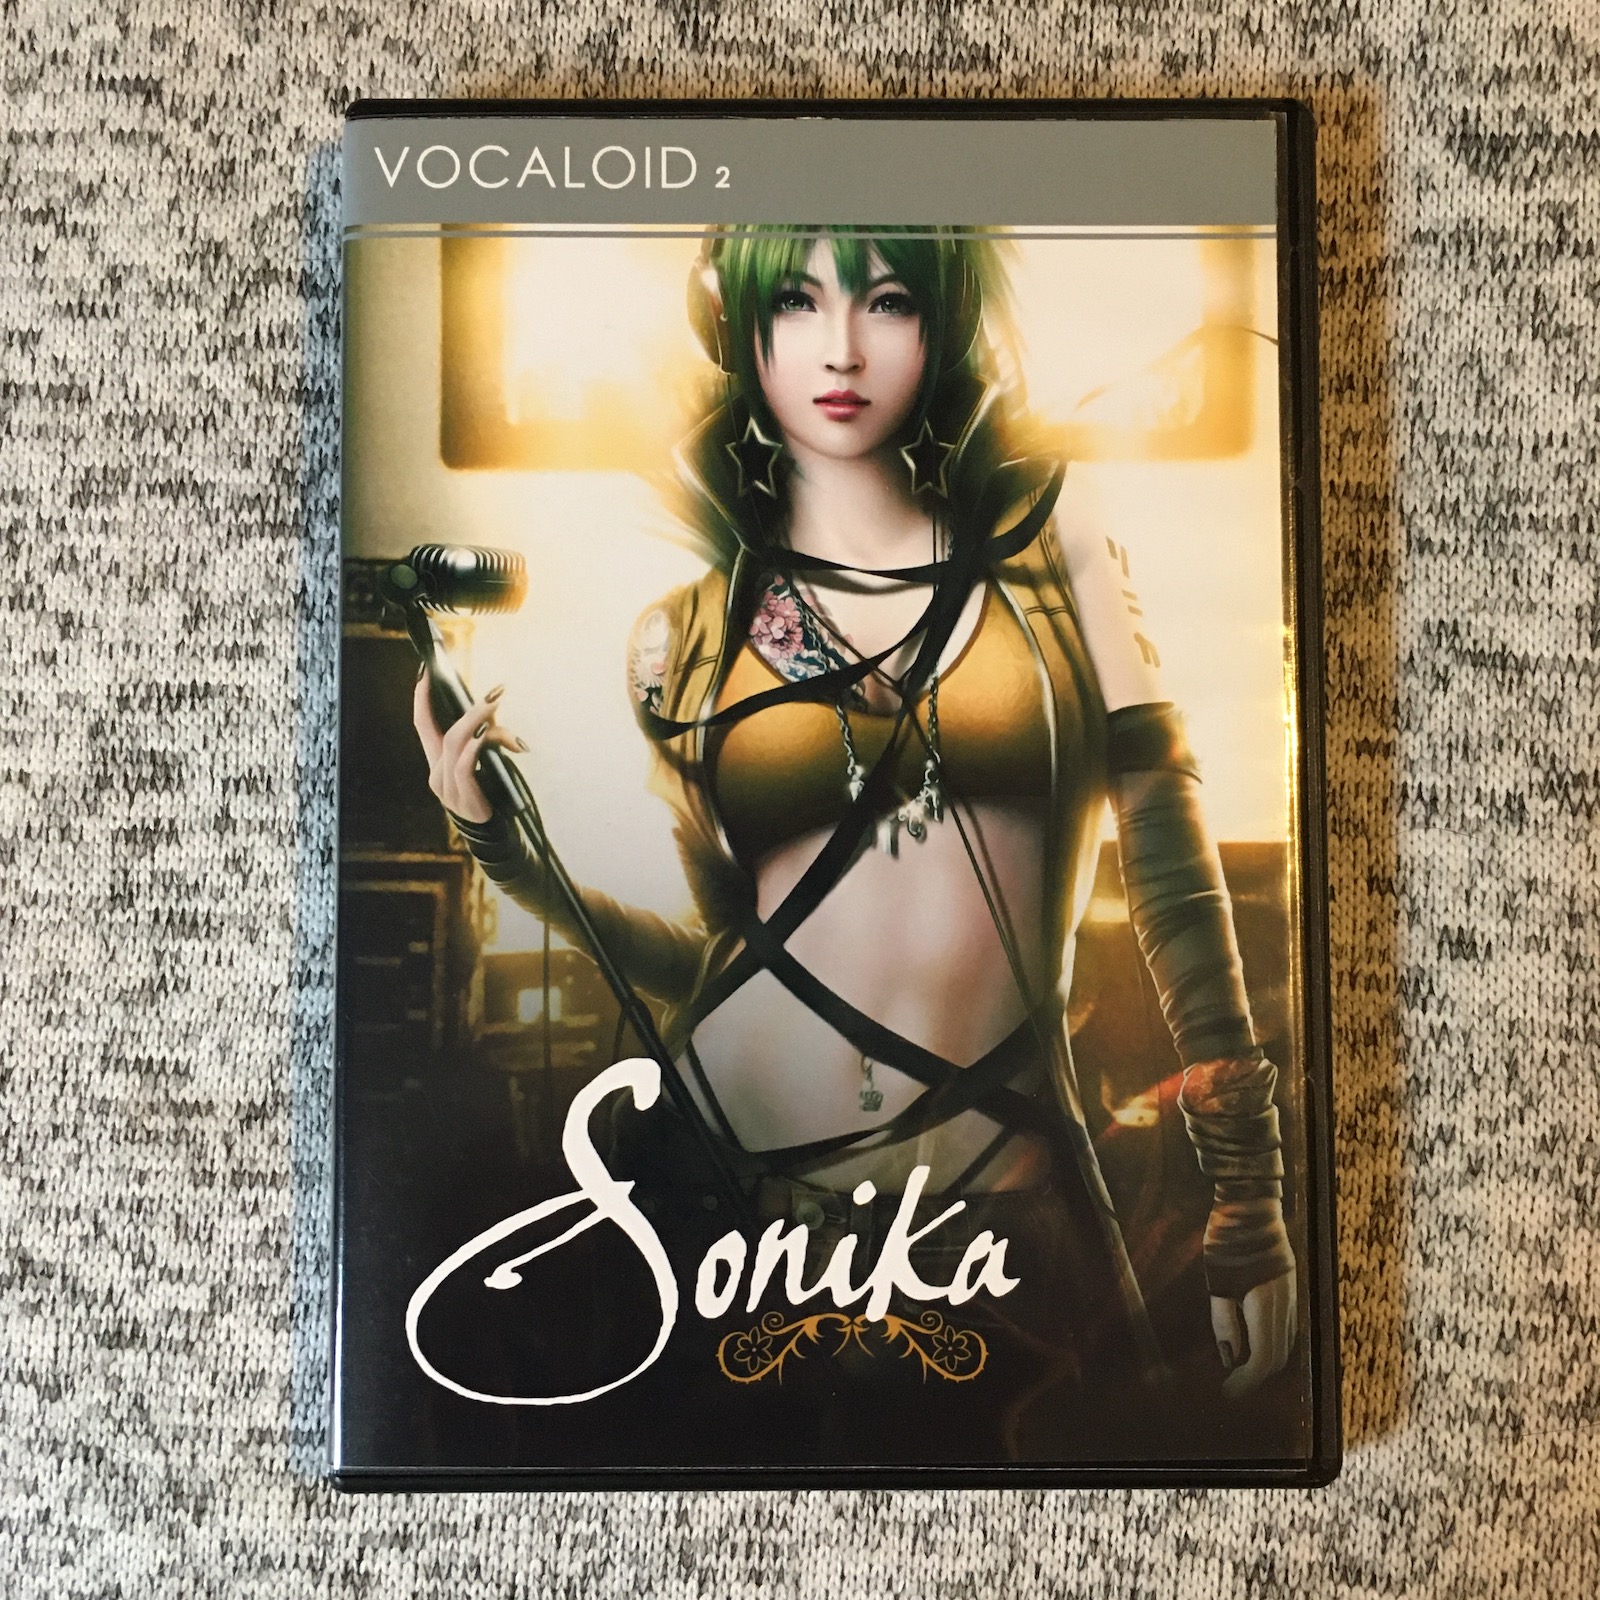 Homemade Sonika box.